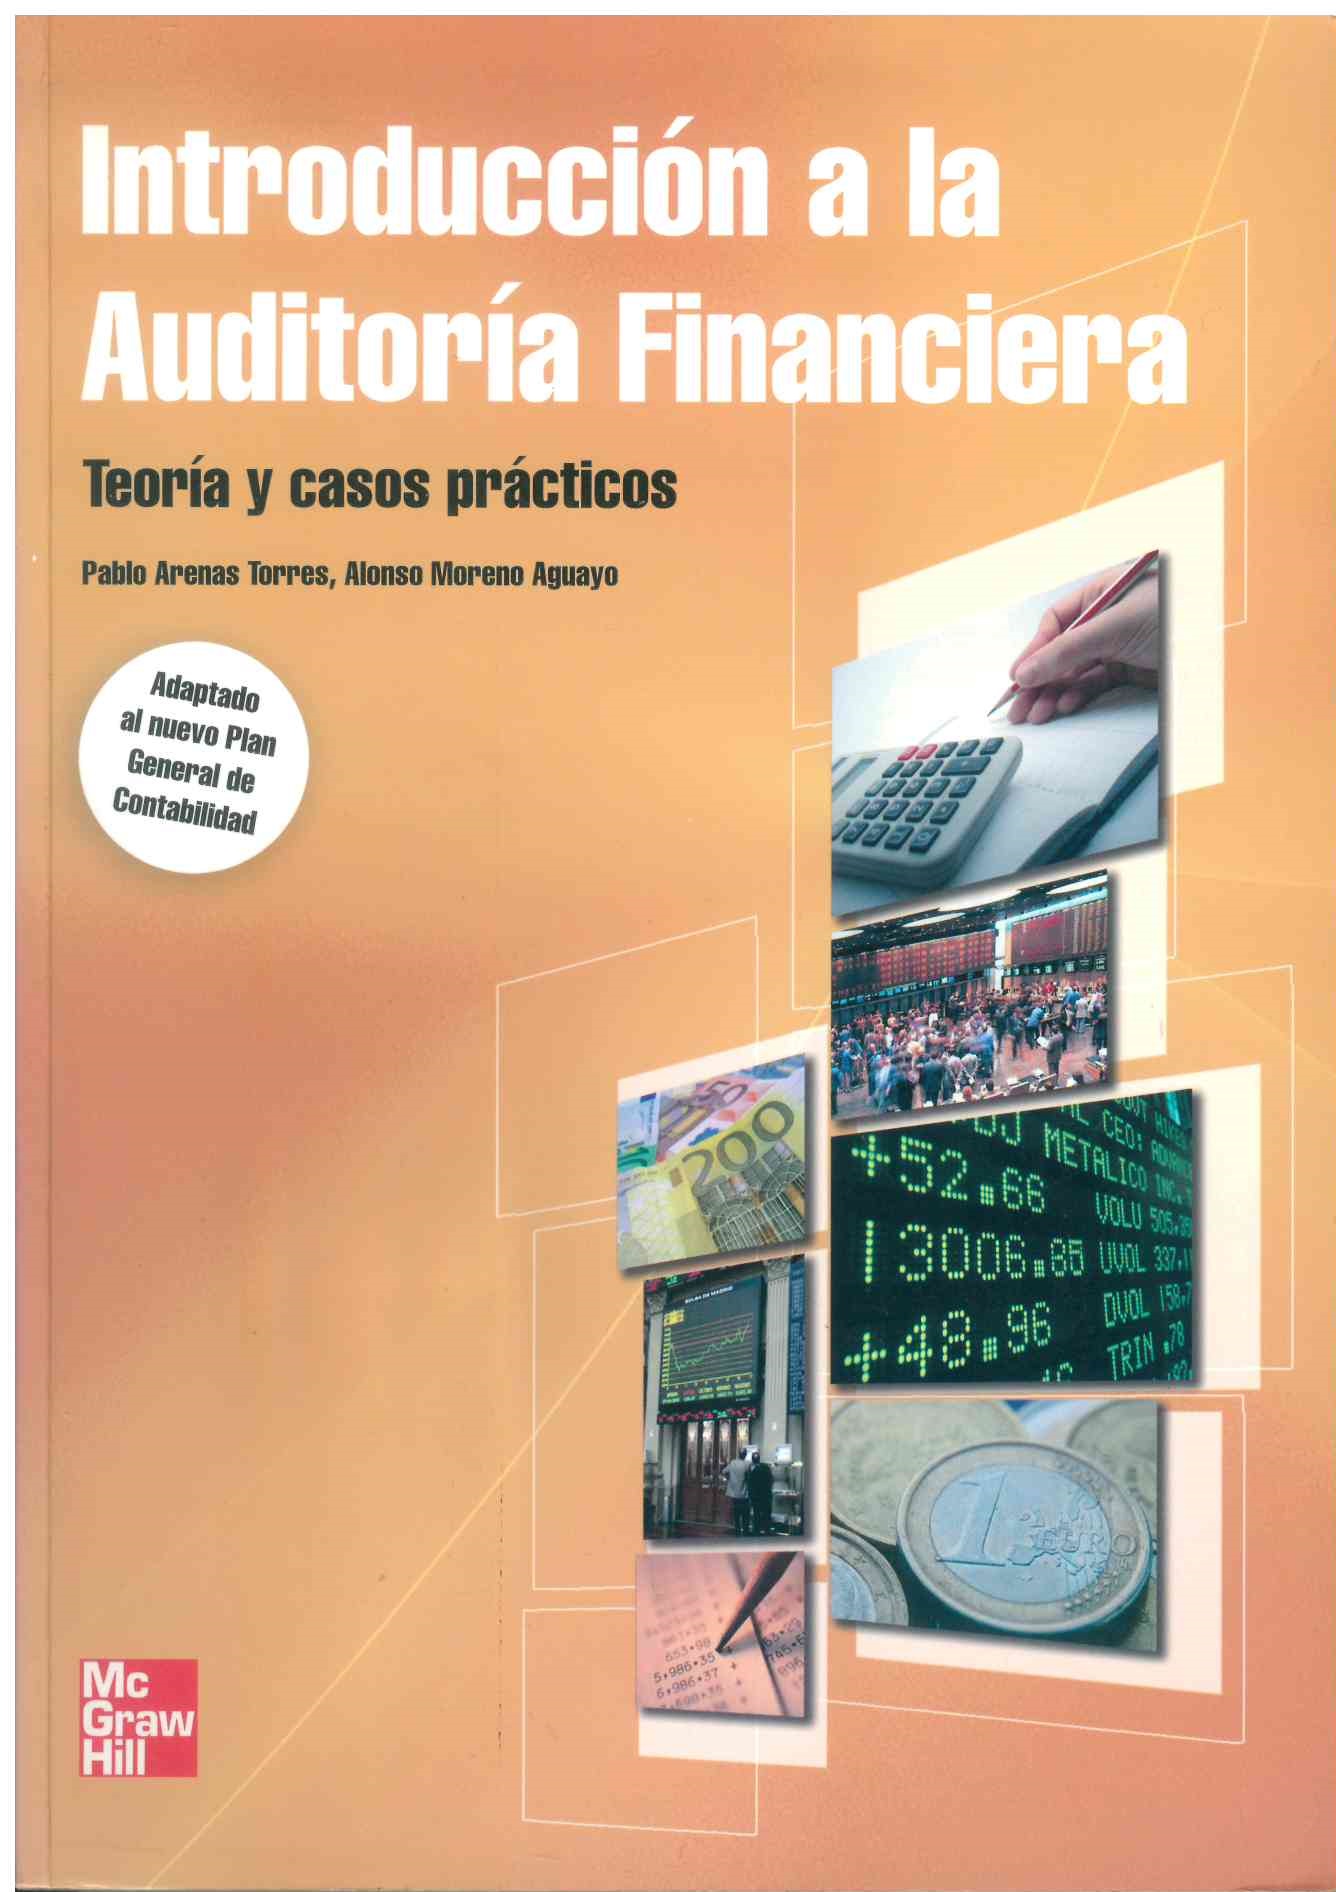 Introducción a la auditoría financira: teoría y casos prácticos